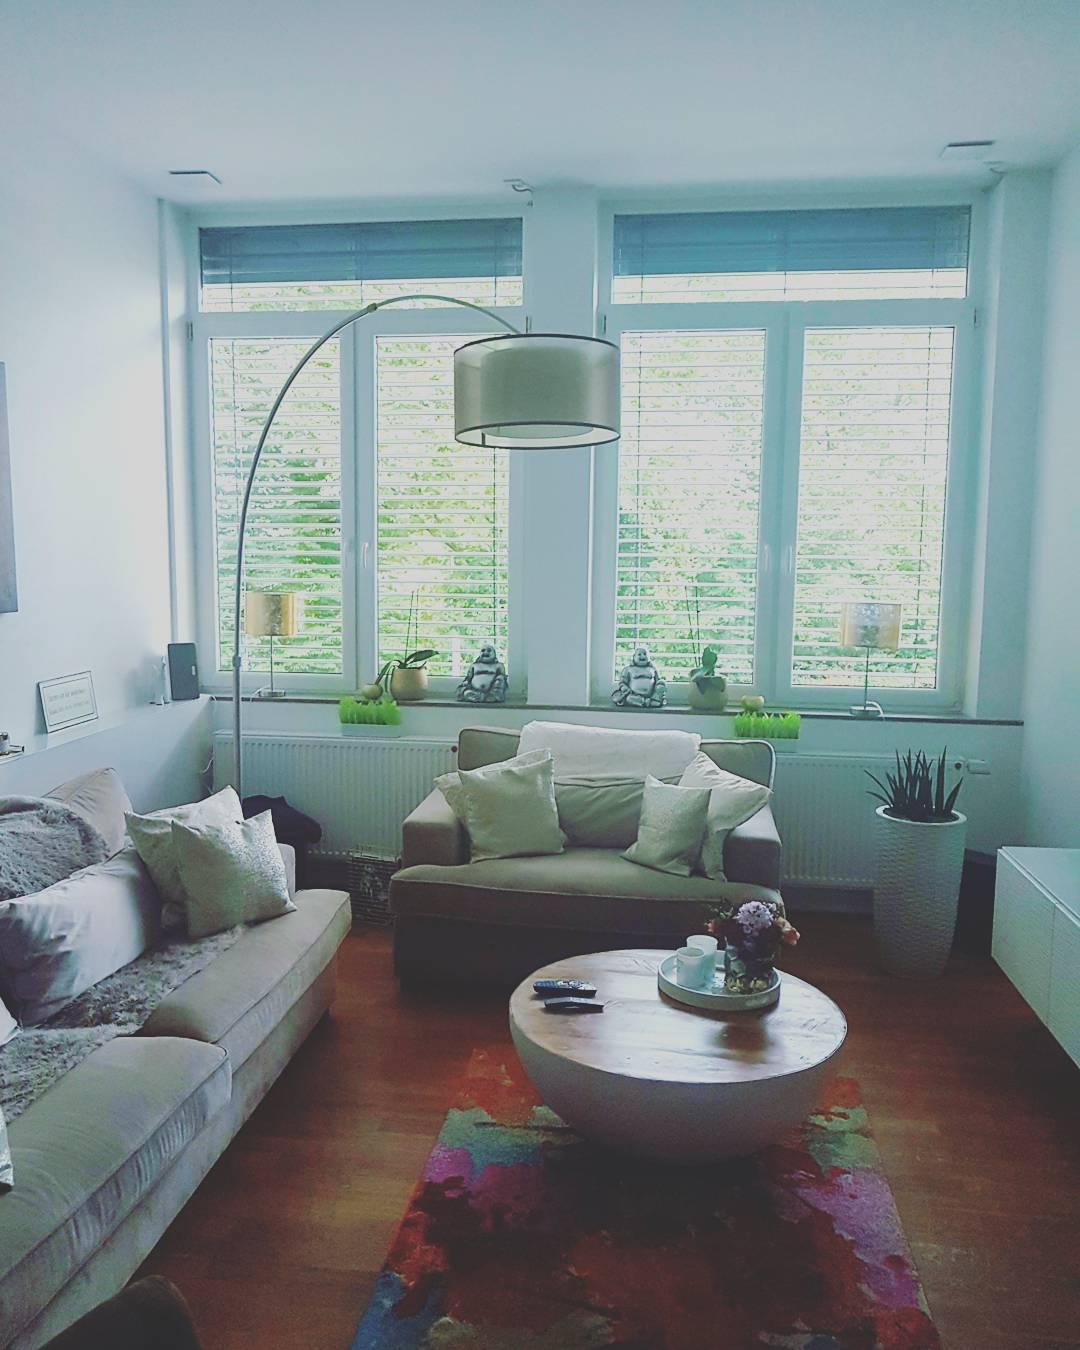 Unser kleines feines Heim, hier das Wohnzimmer
#interior_and_living #livingroom #inspiration #home#furniture #zuhause